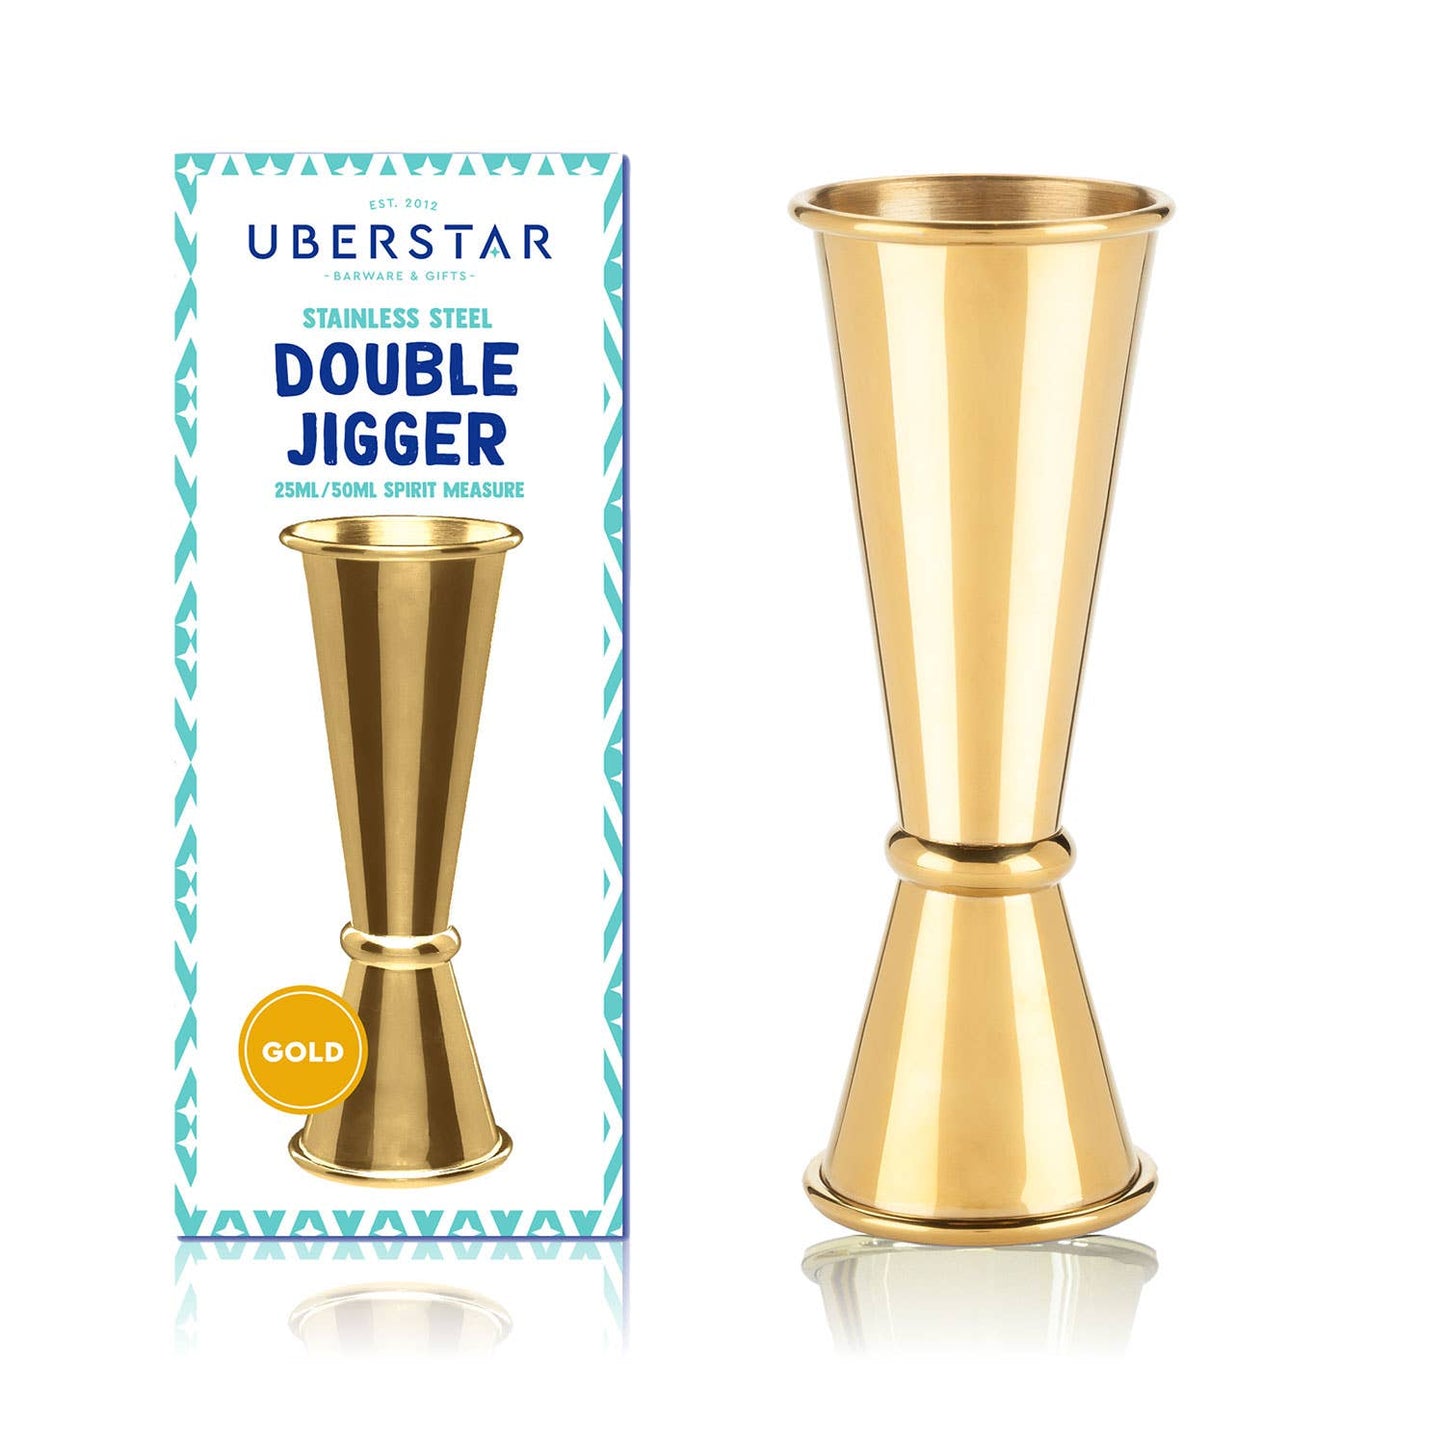 Double Jigger Stainless Spirit Measure 25ml/50ml - Gold